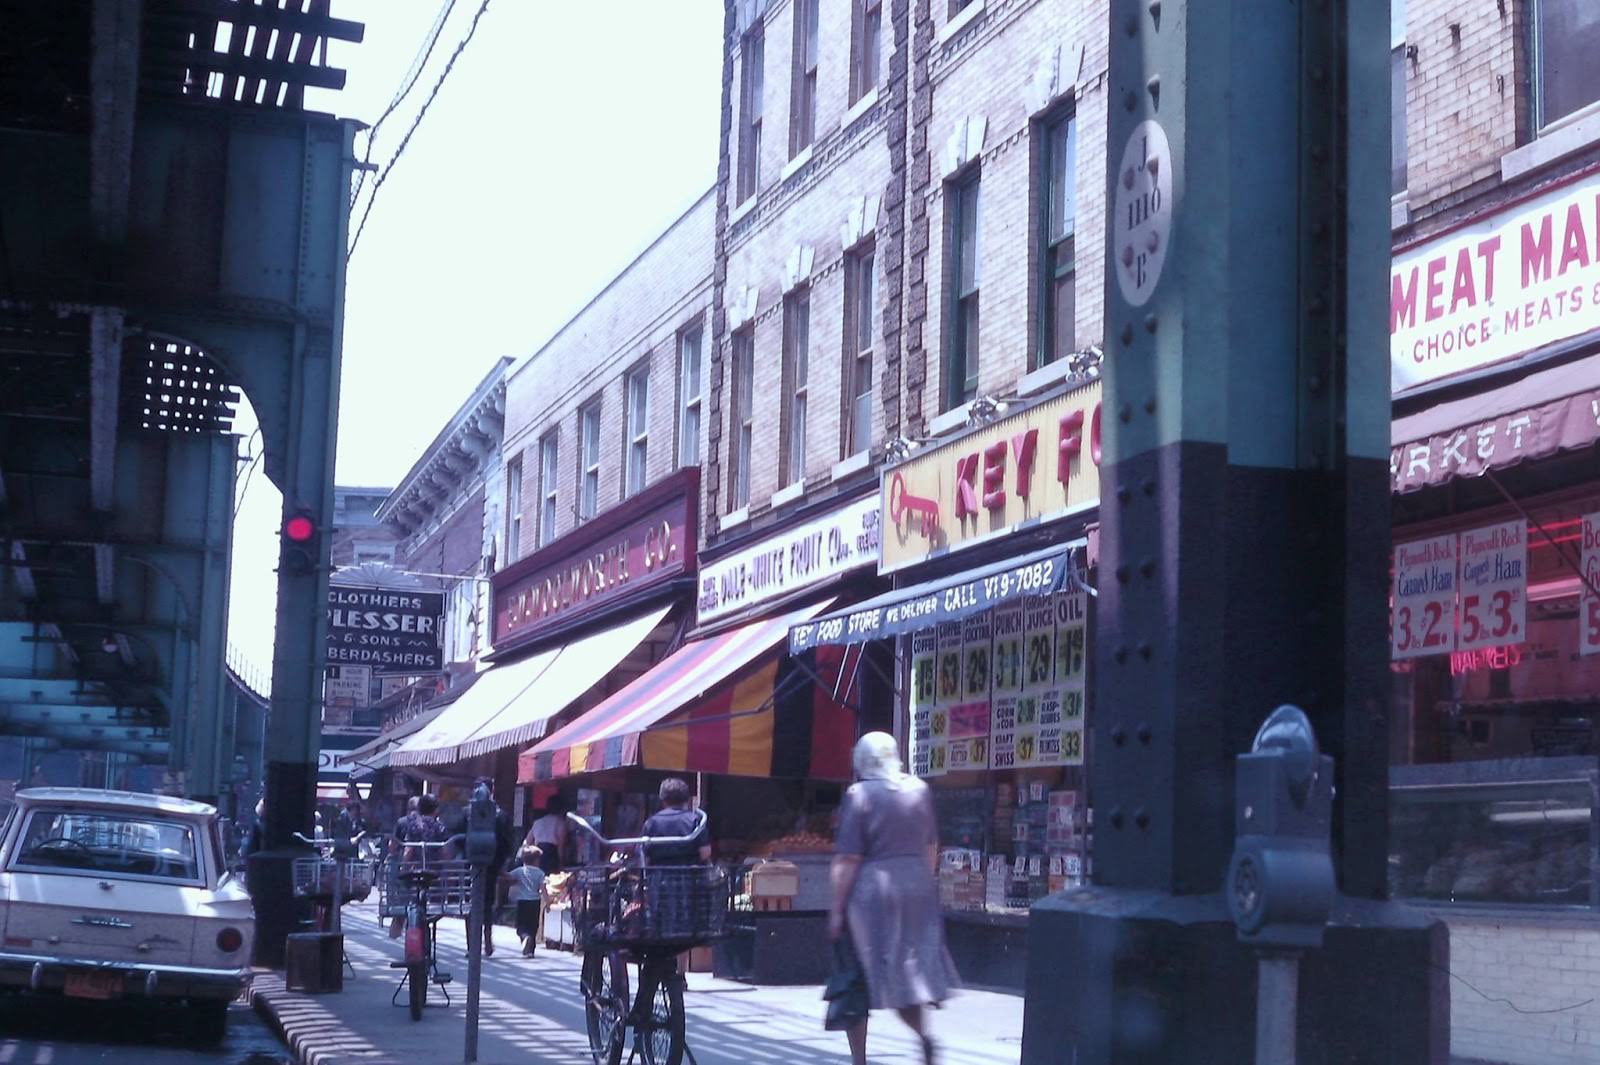 Jamaica Avenue toward 91st Street, Woodhhaven, Queens 1963.